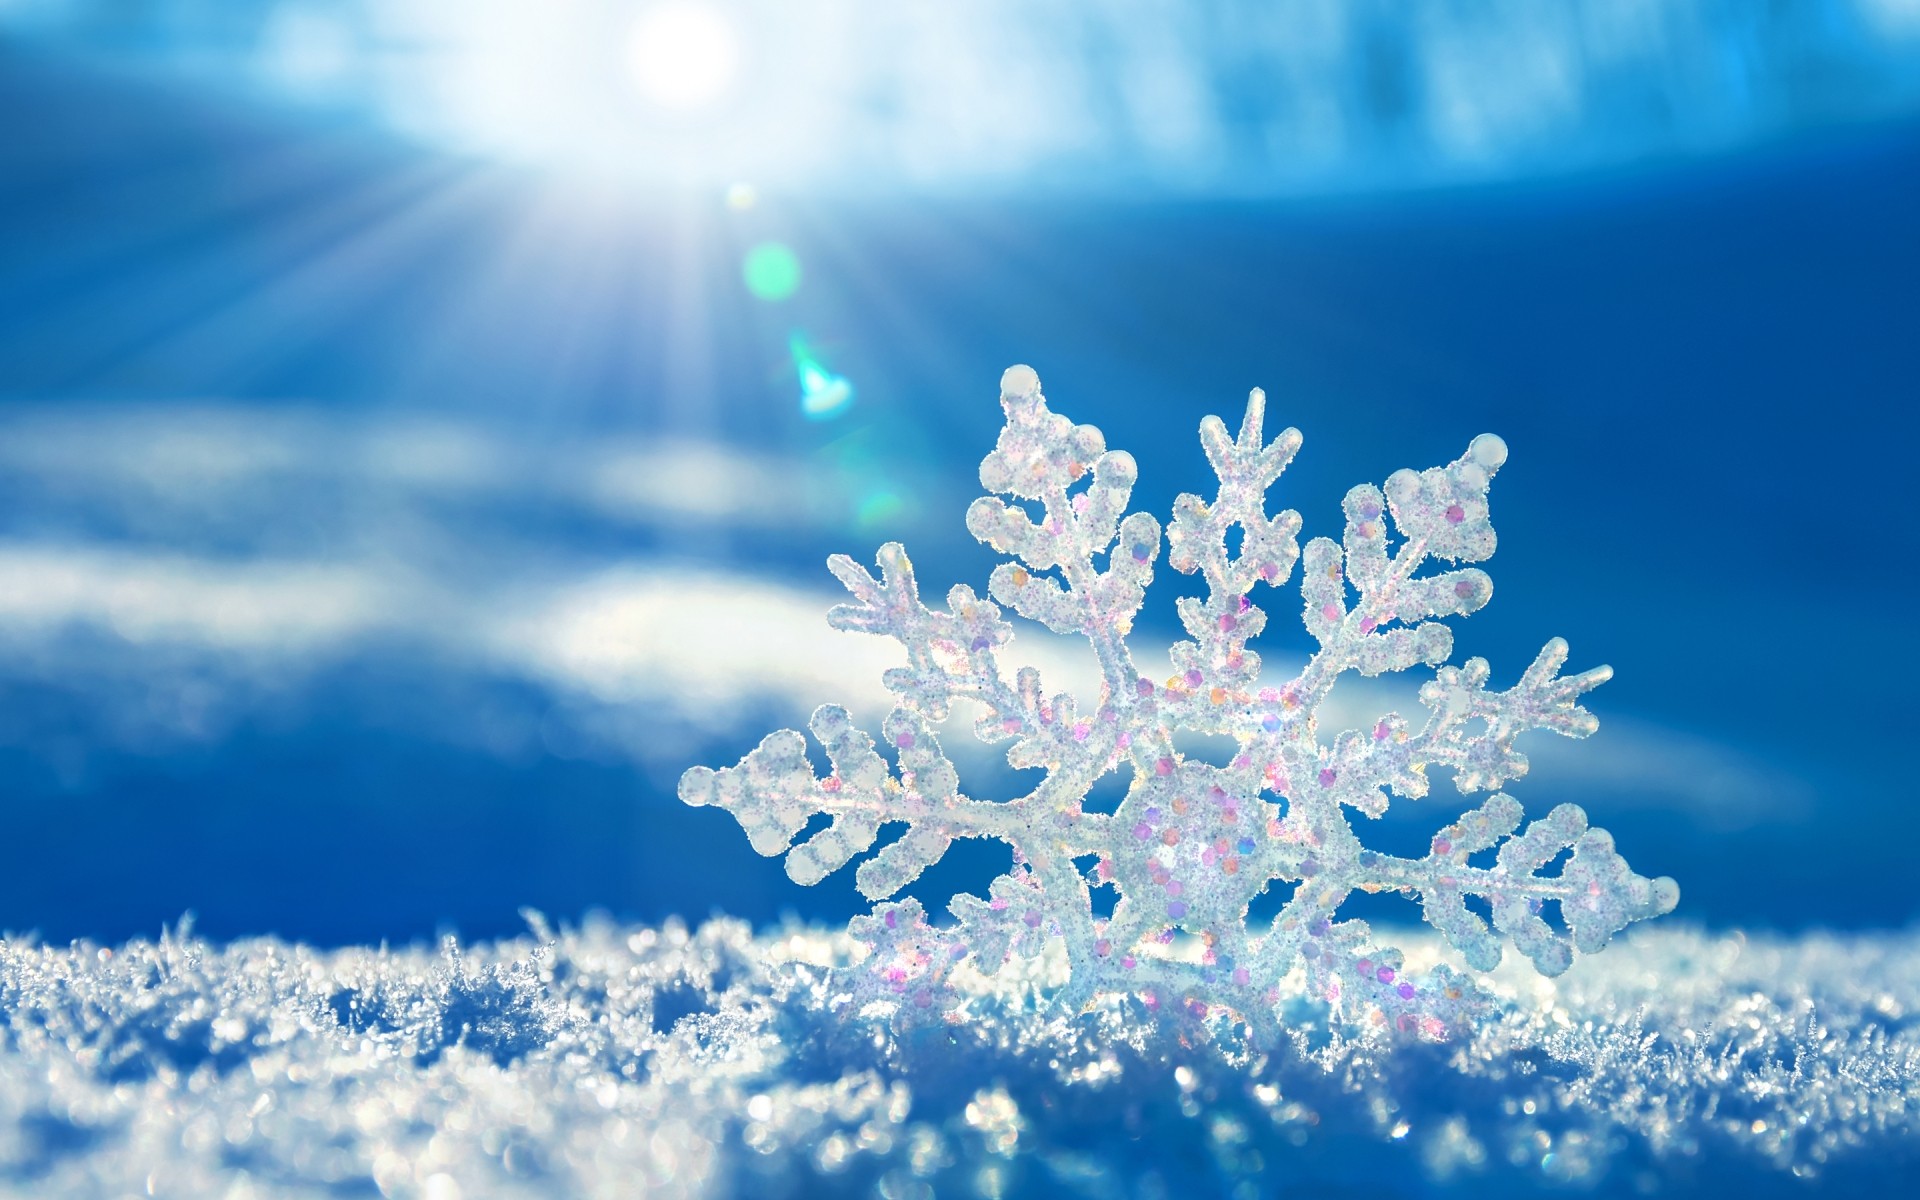 зима снег мороз сезон рождество холодная замороженные снежинка лед рабочего стола природа дерево морозный яркий погода цвет небо фон пейзаж